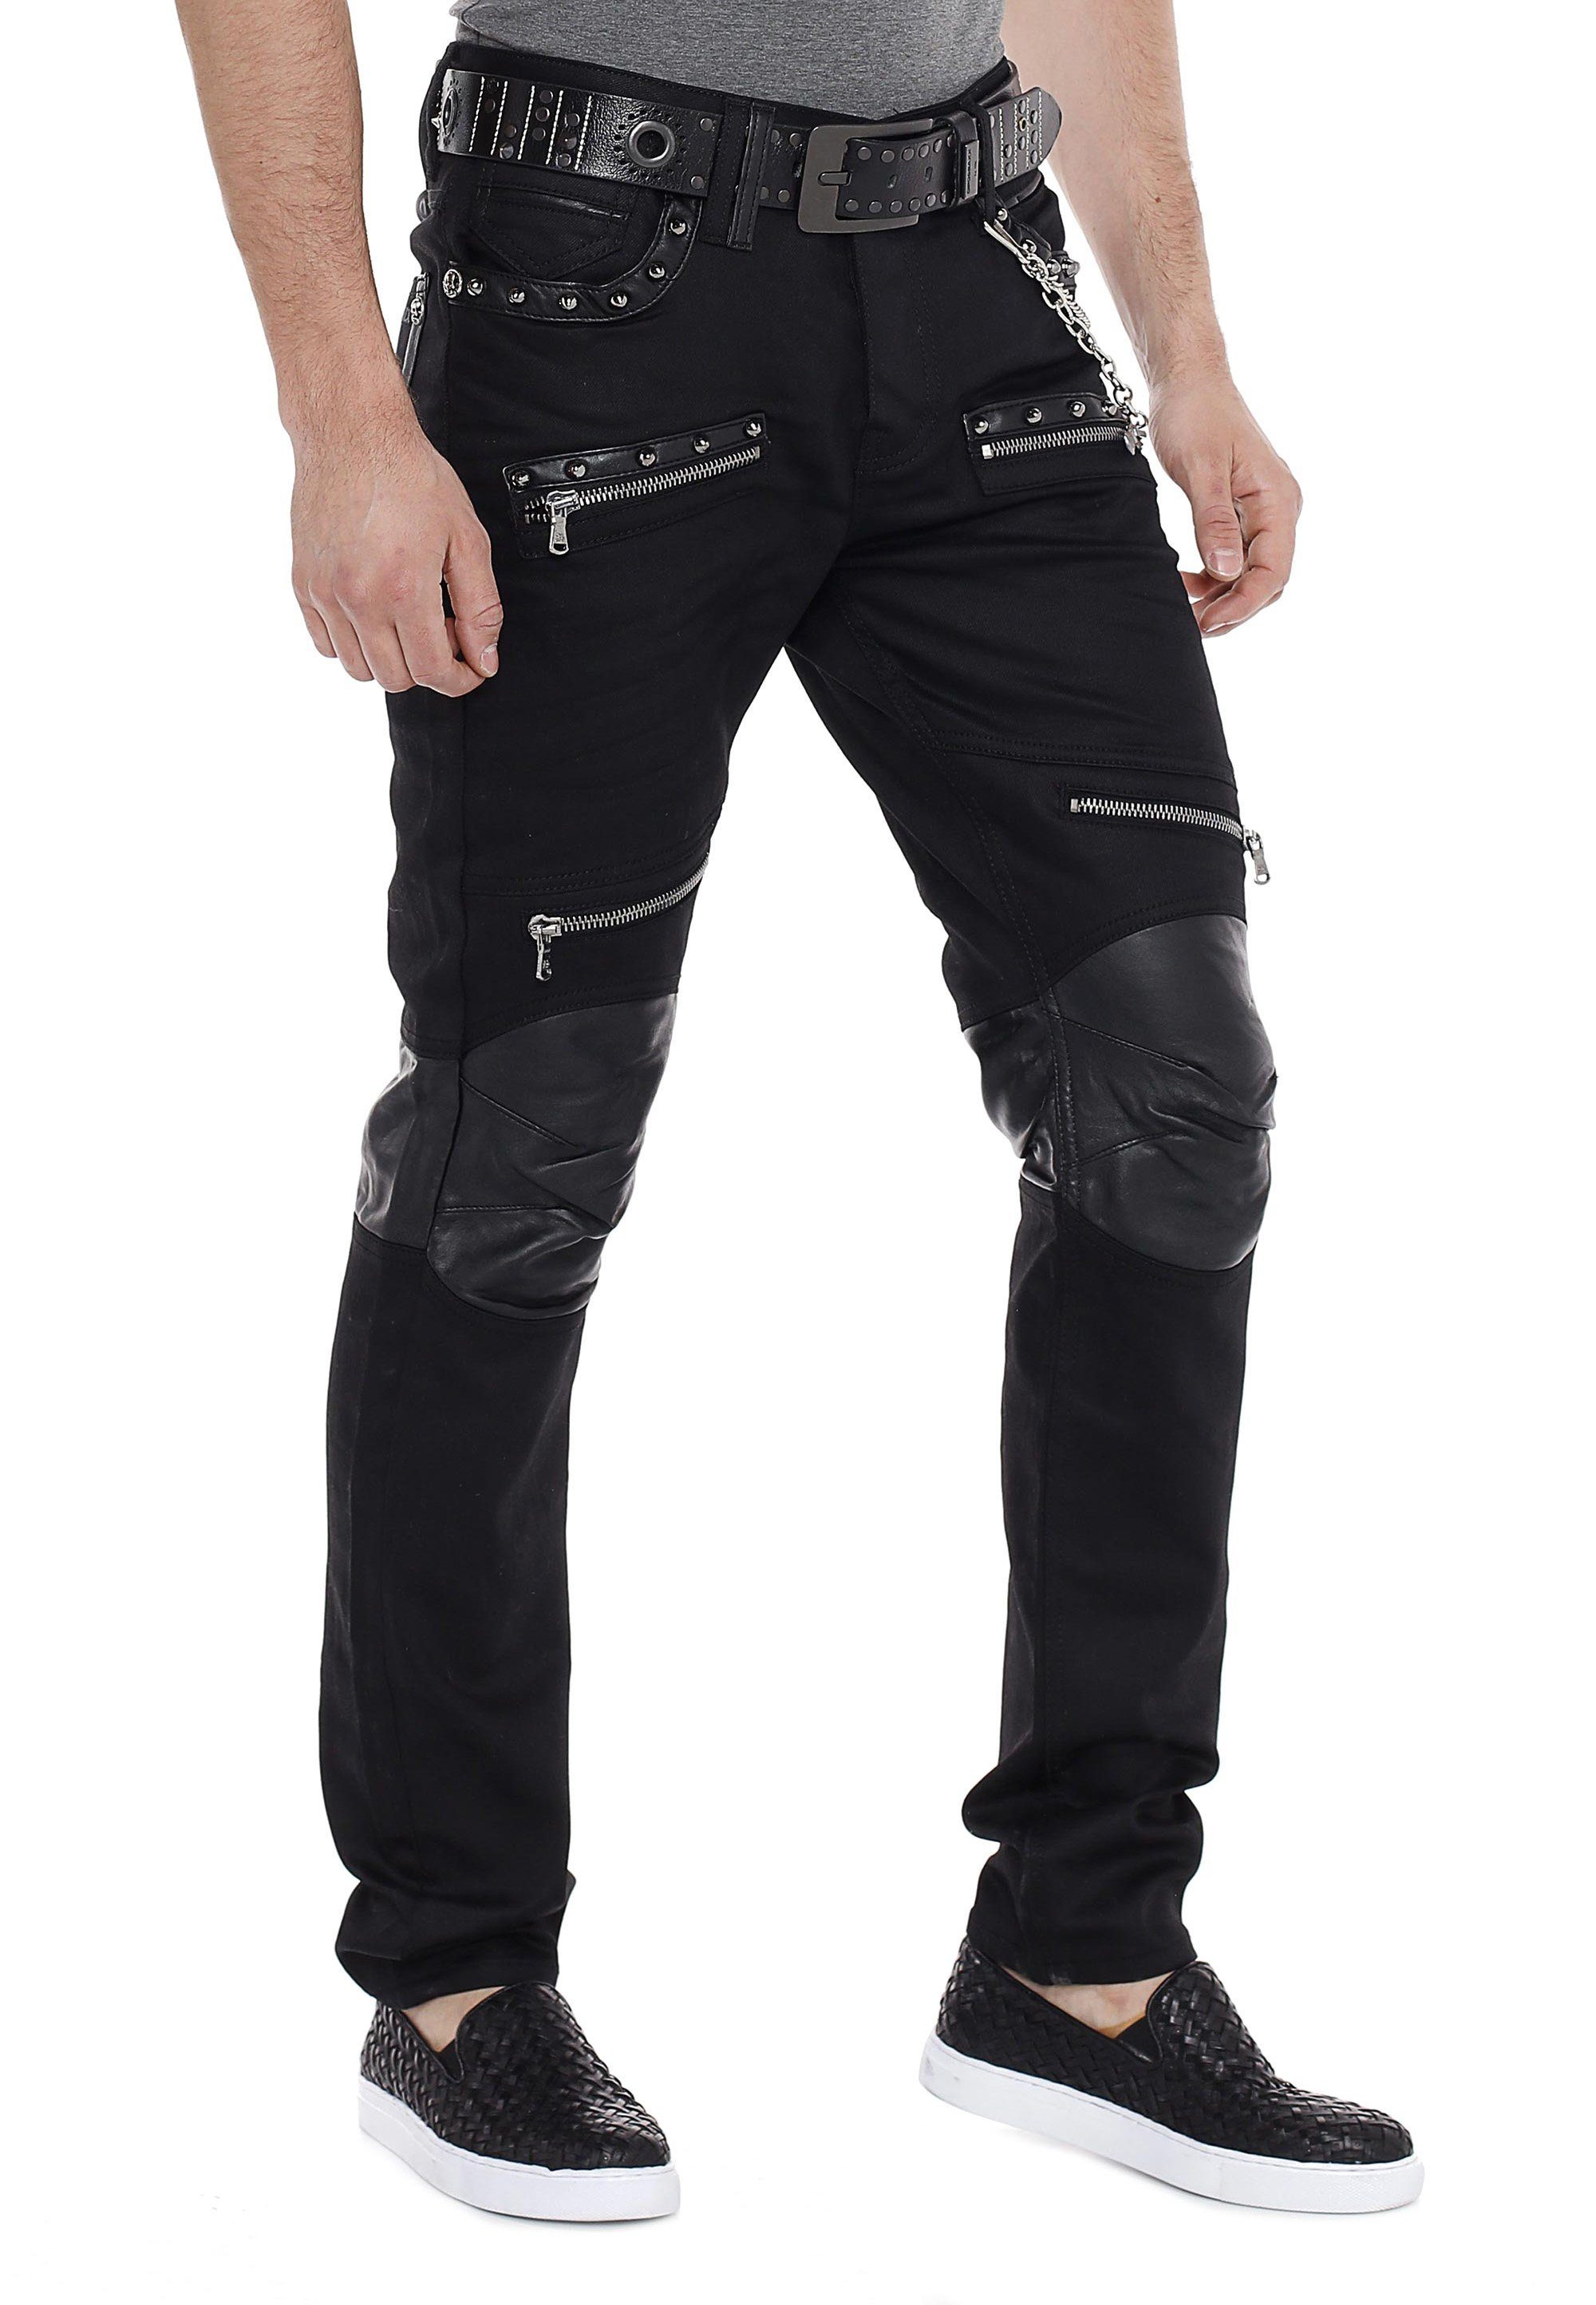 Einsatz Leder Baxx mit Cipo & Slim-fit-Jeans